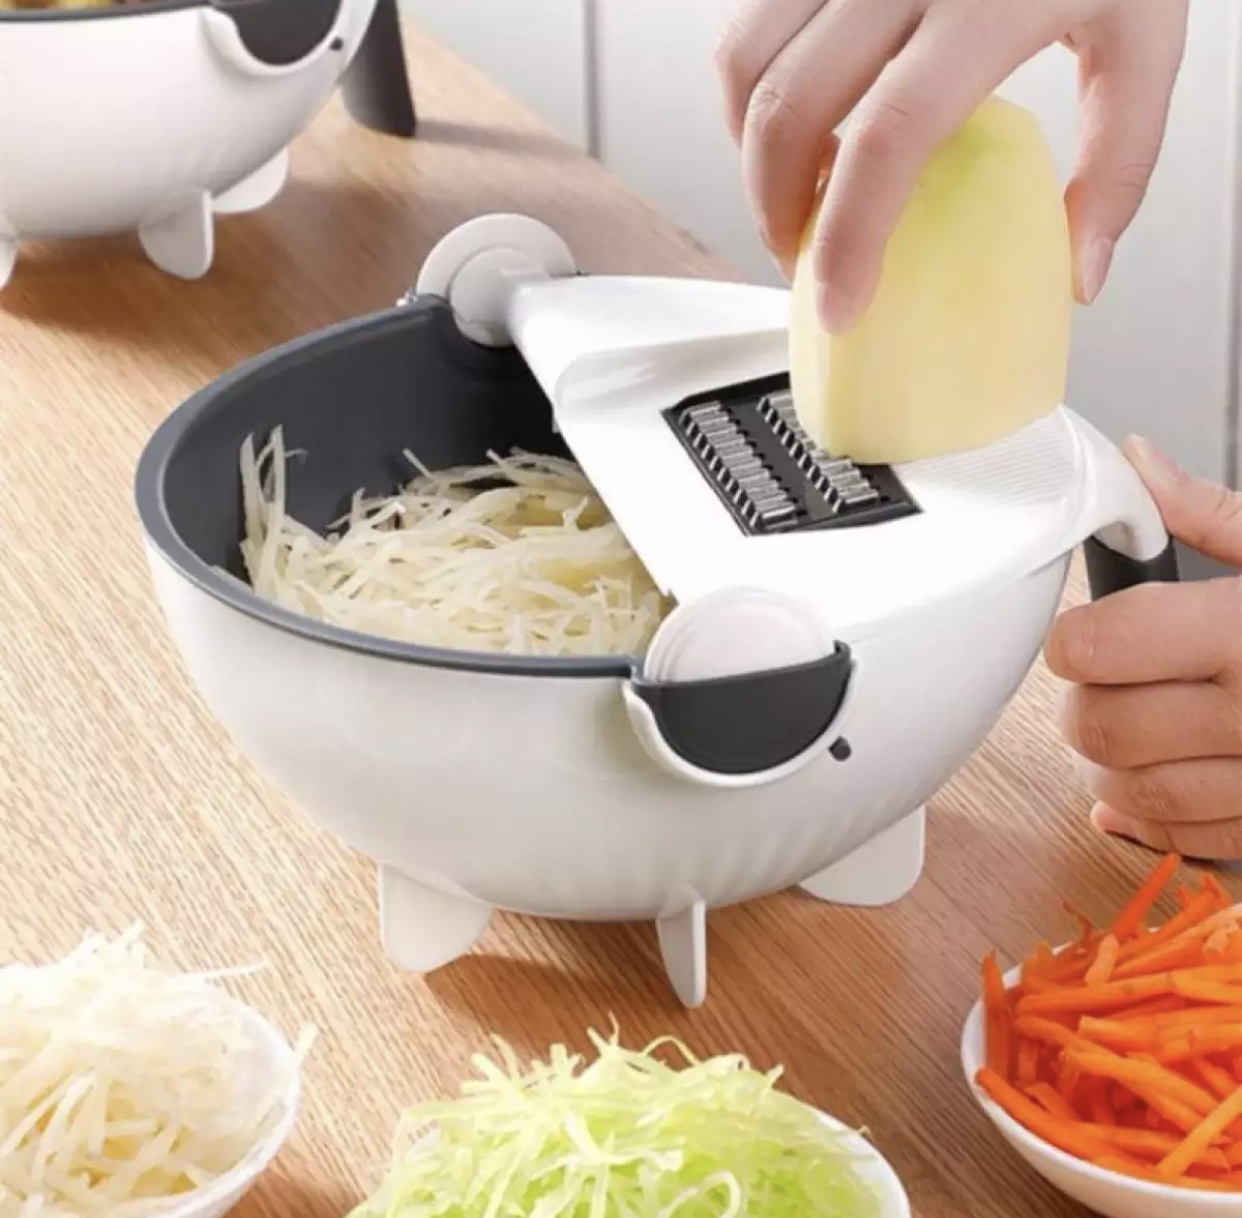 เครื่องหั่นผักอเนกประสงค์ อุปกรณ์หั่นผัก ชุดสไลด์ผัก เครื่องหั่นผักพร้อมตะกร้าระบายน้ำ ของใช้ในครัว เครื่องครัว